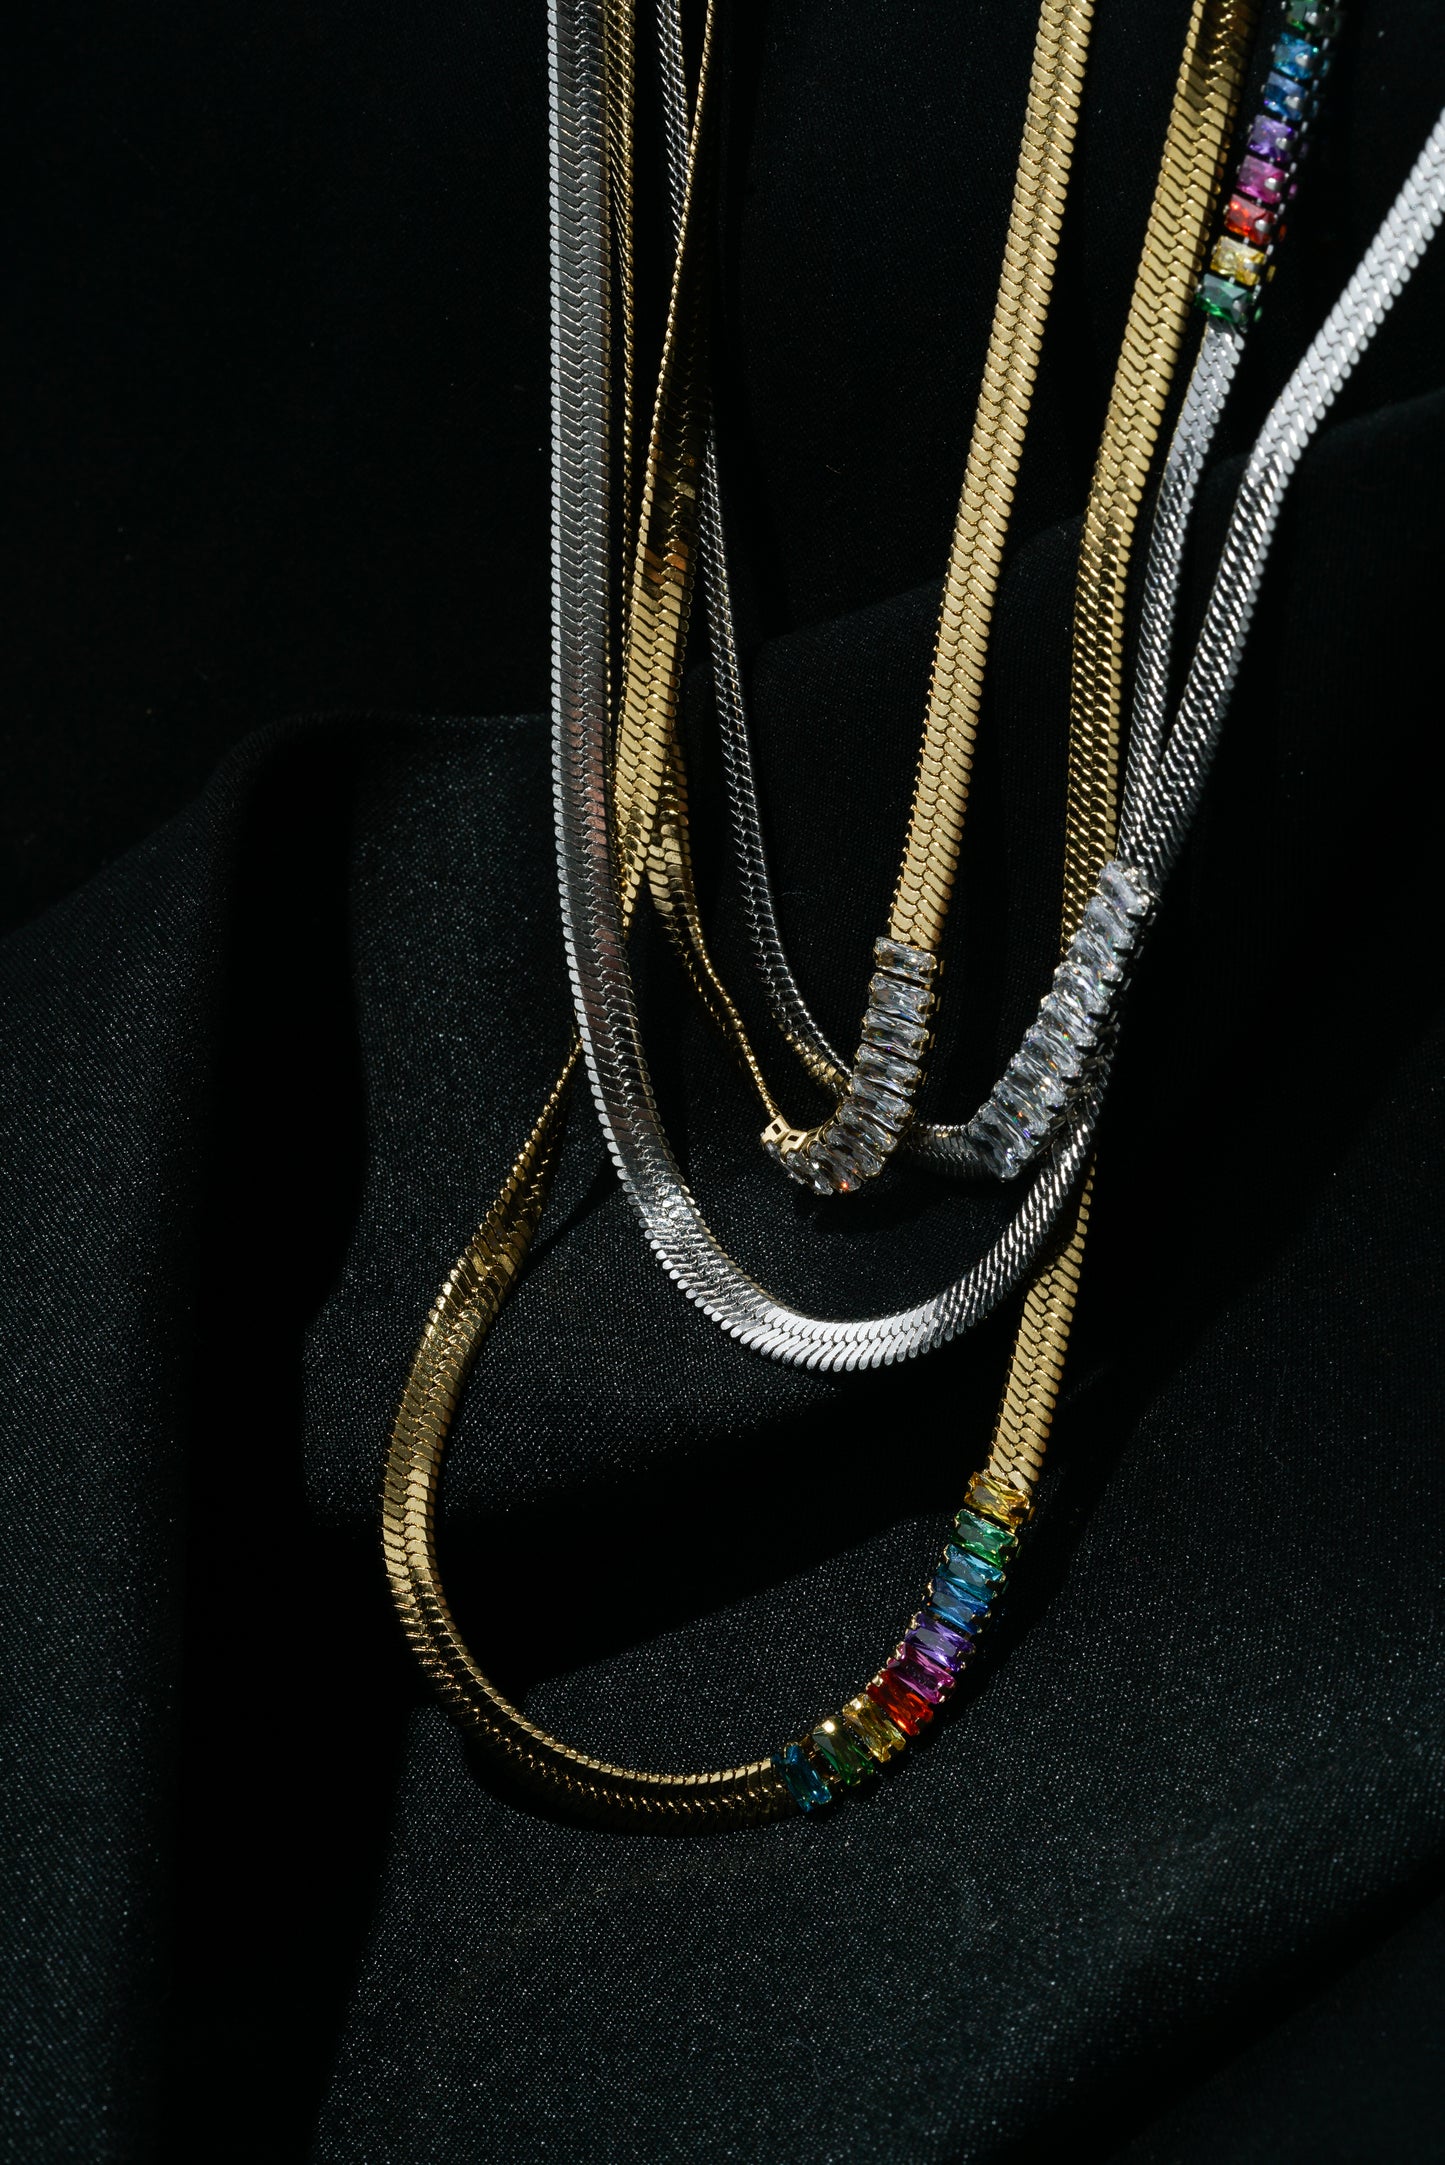 Diamante Herringbone Chain